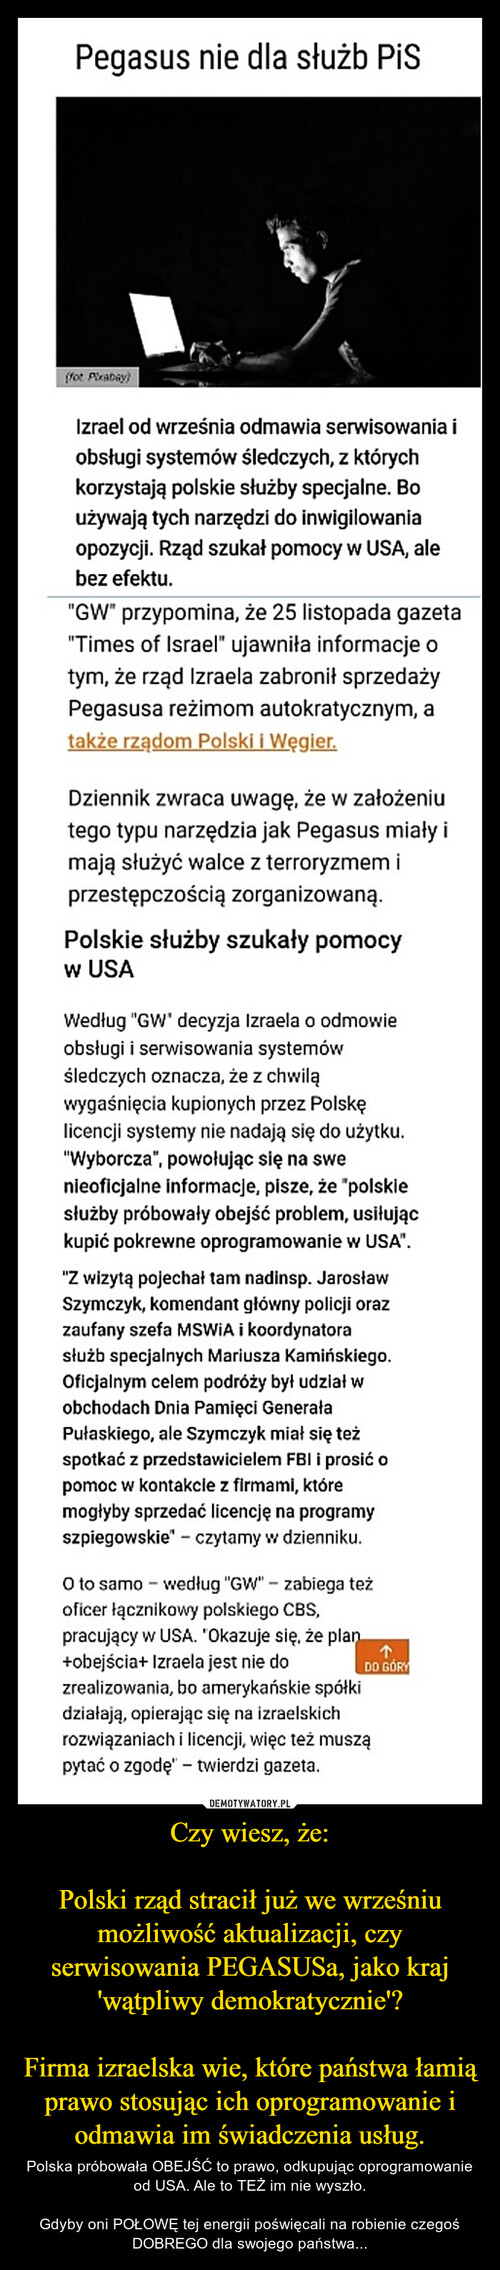 Czy wiesz, że:

Polski rząd stracił już we wrześniu możliwość aktualizacji, czy serwisowania PEGASUSa, jako kraj 'wątpliwy demokratycznie'?

Firma izraelska wie, które państwa łamią prawo stosując ich oprogramowanie i odmawia im świadczenia usług.